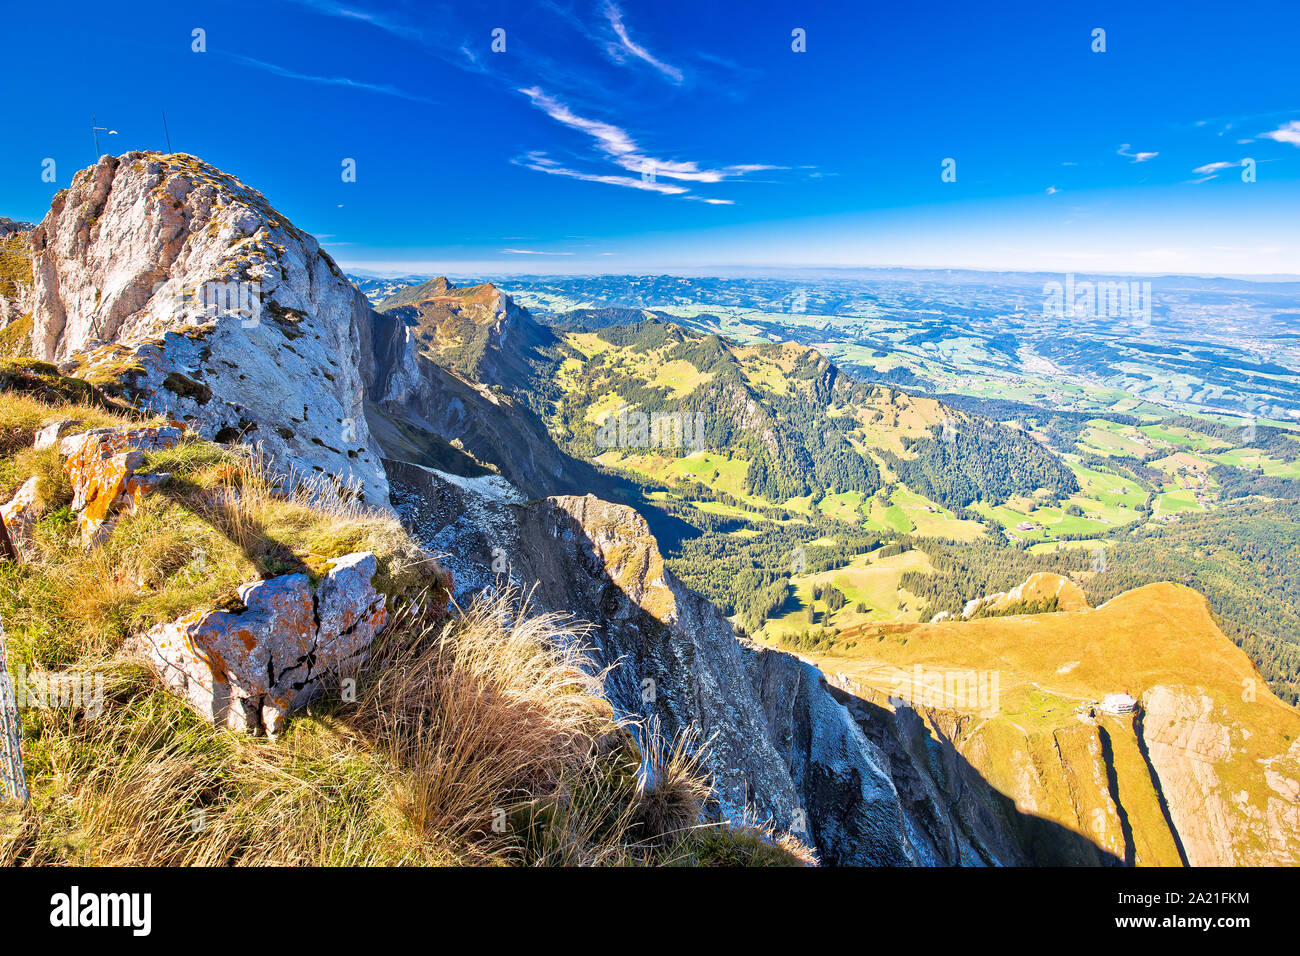 Alps in Switzerland on Pilatus Kulm mountain panoramic view, Swiss landscape Stock Photo